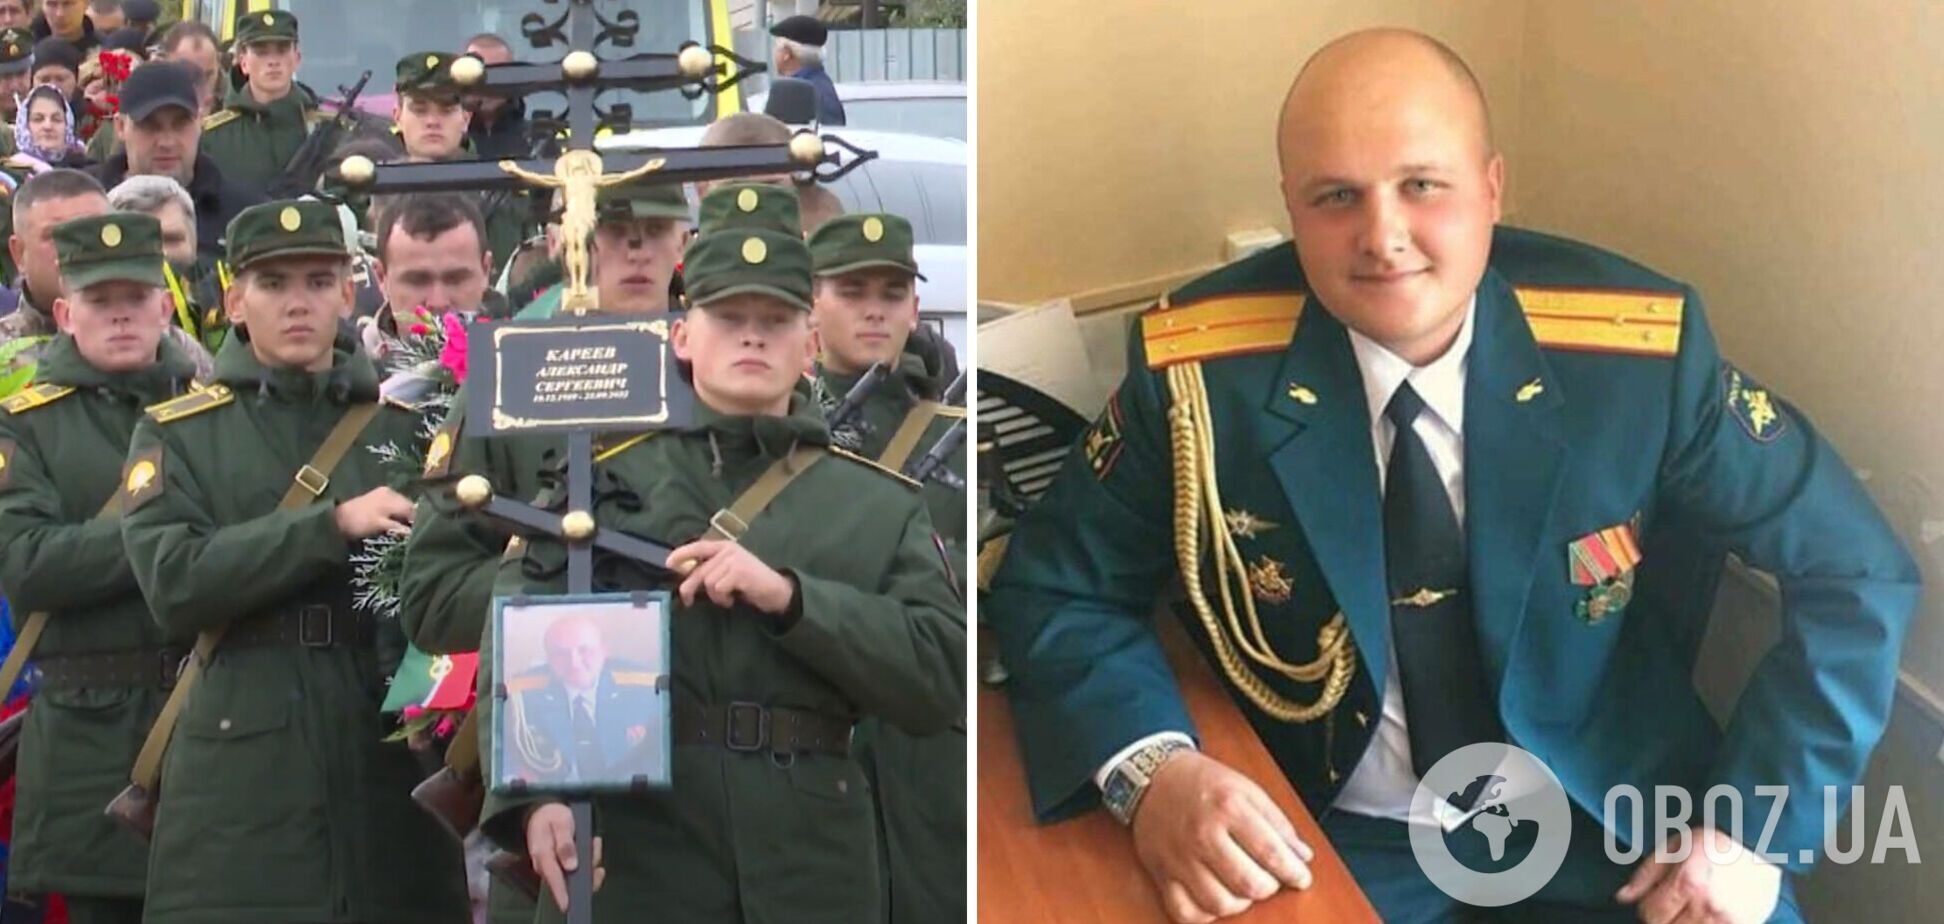 Александр Кареев 'денацифицировался' в Украине